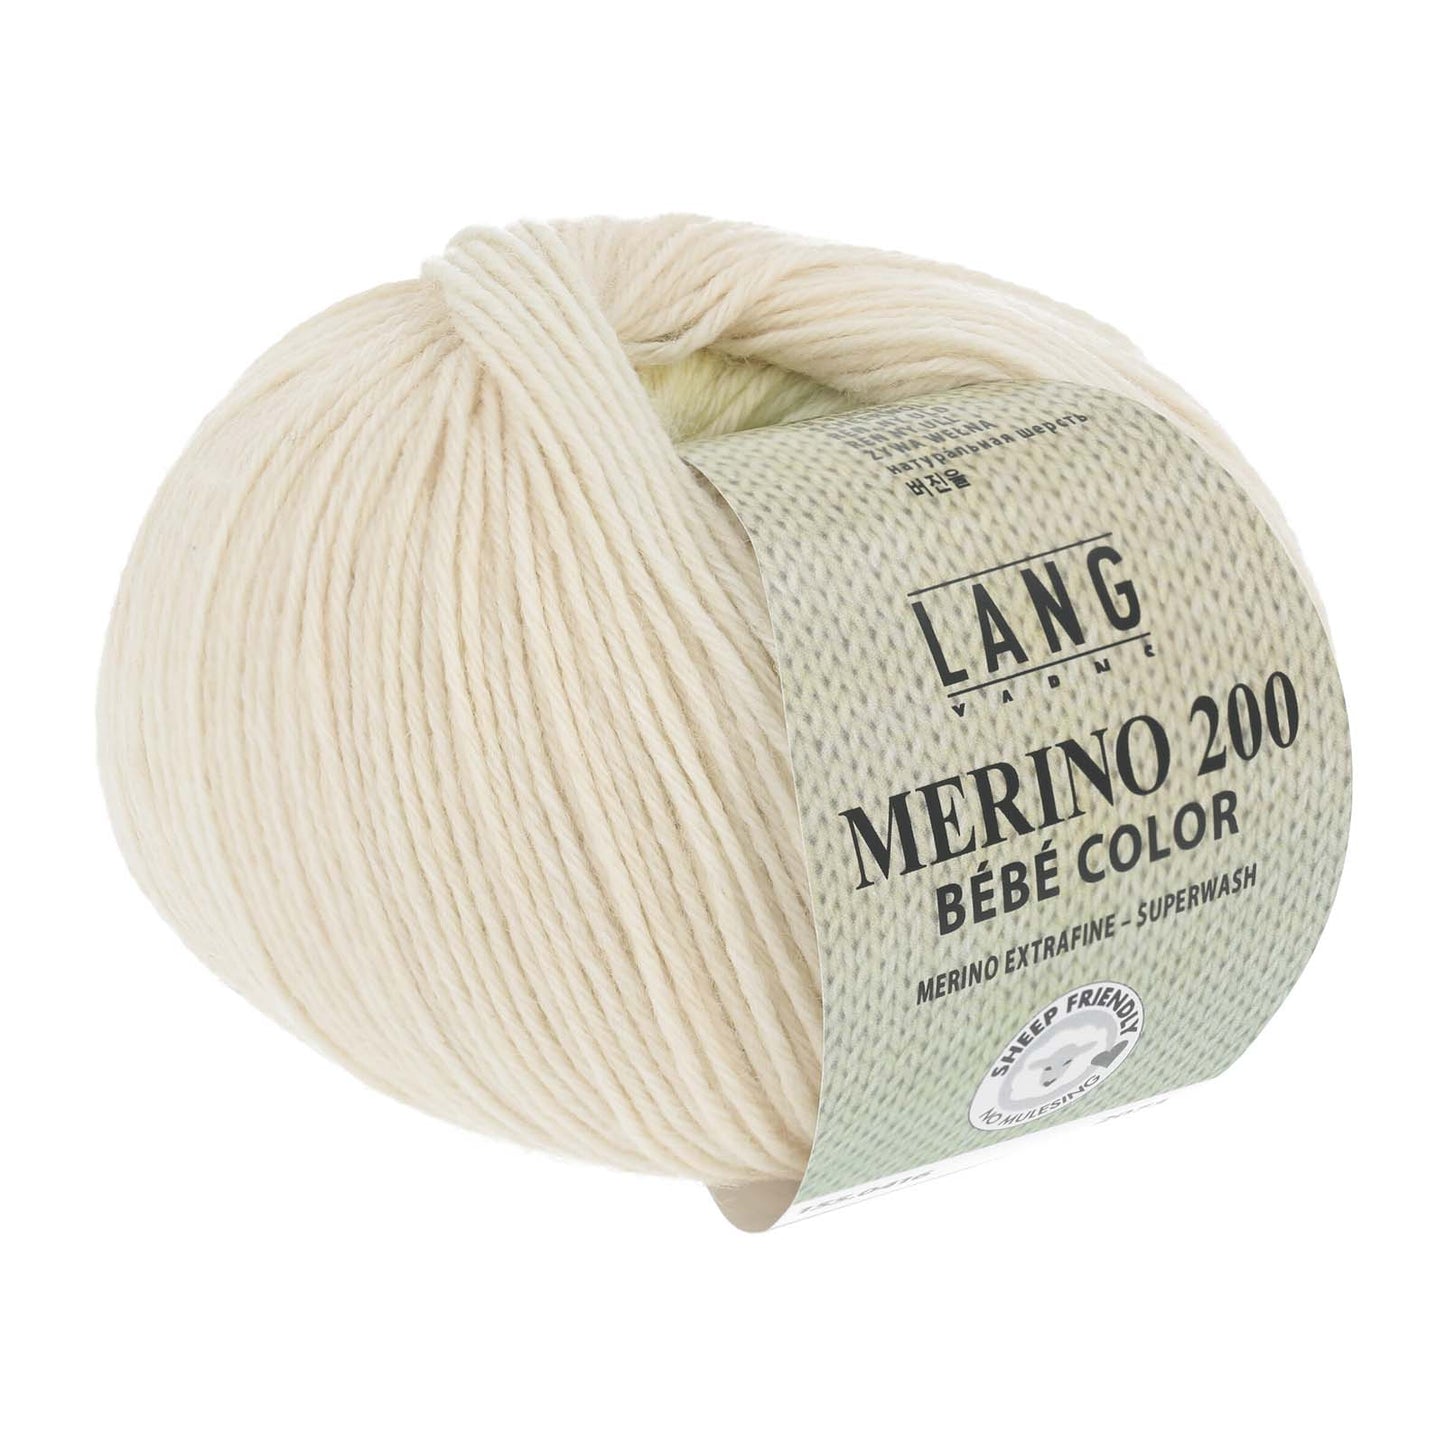 Merino 200 bébé color farveskifte garn fra lang yarns